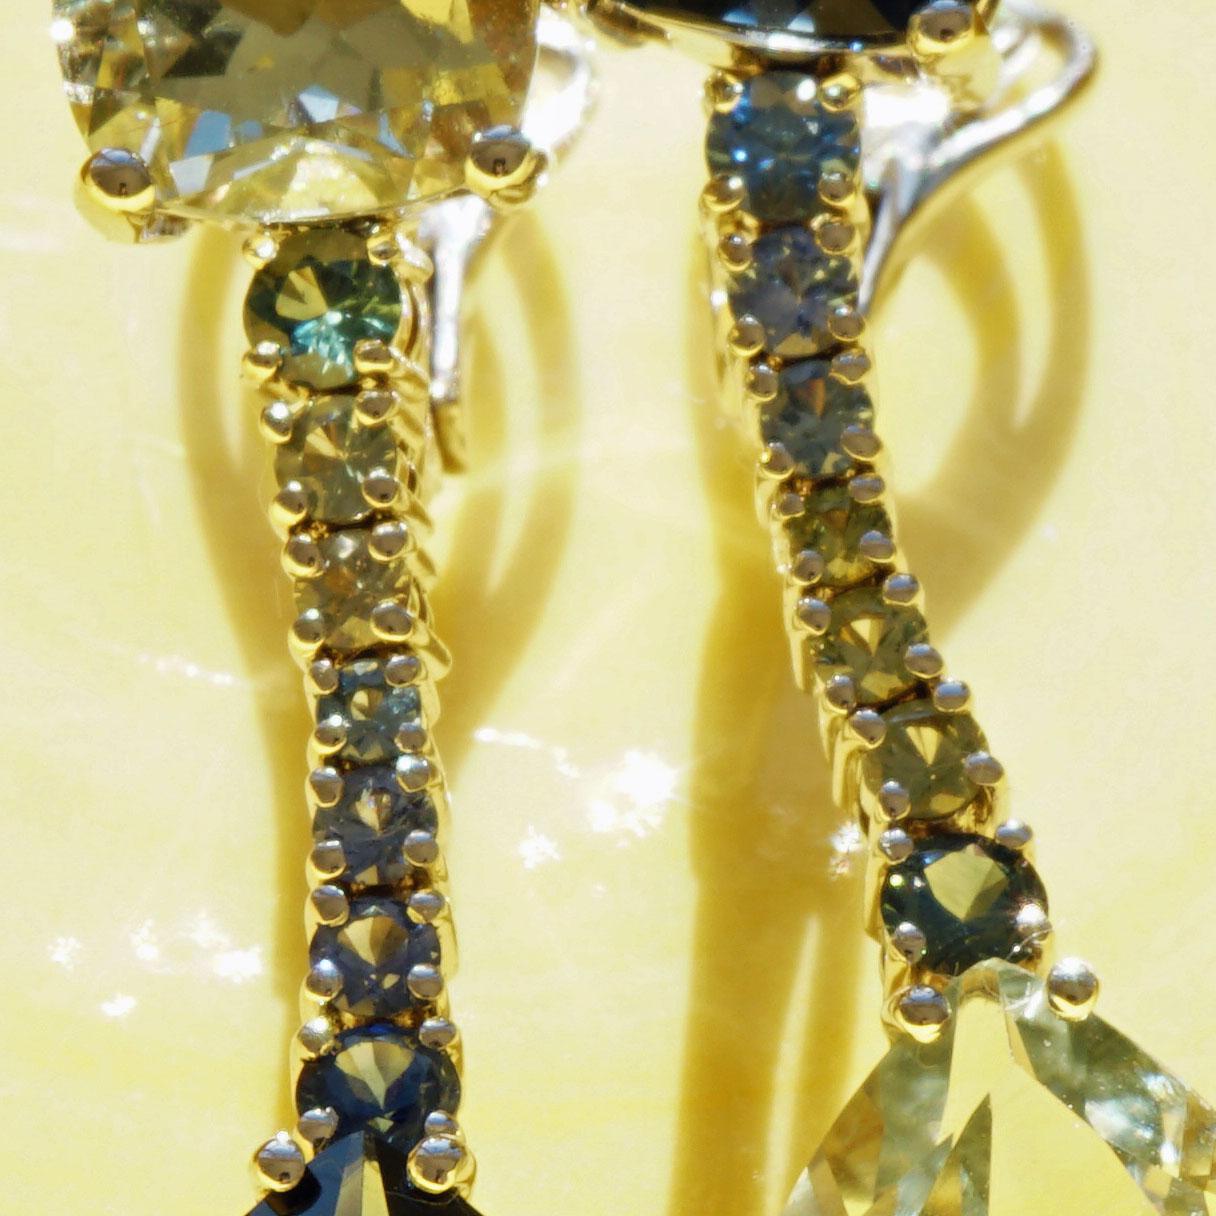 Wunderschöne Ohrringe von einem traditionellen italienischen Goldschmied in Valenza gefertigt, es ist eine Art Zauberei, je ein Blautopas oval facettiert in der Farbe London Blue und ein grünlicher Amethysttropfen (Prasiolith) mit der Gegenfarbe als